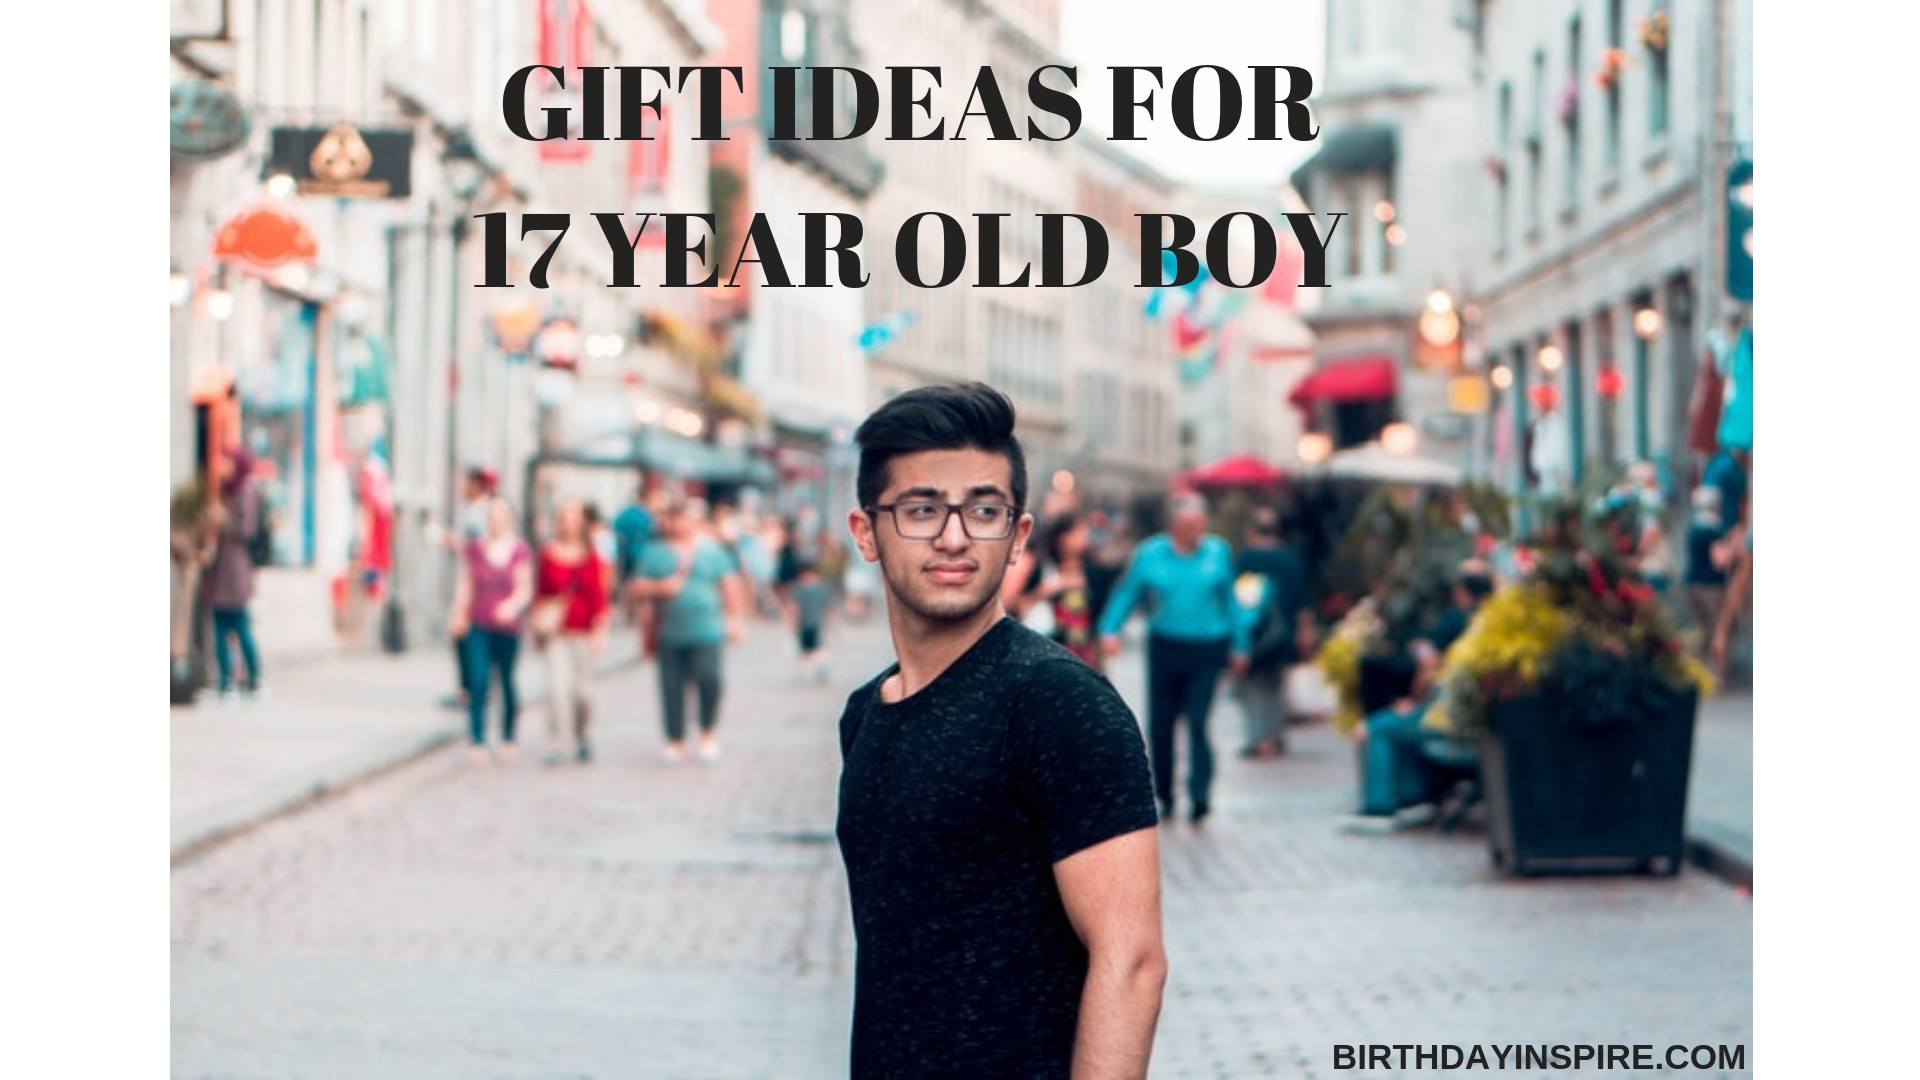 17 Year Old Boy Birthday Party Ideas
 33 Wonderful Gift Ideas For 17 Year Old Boy